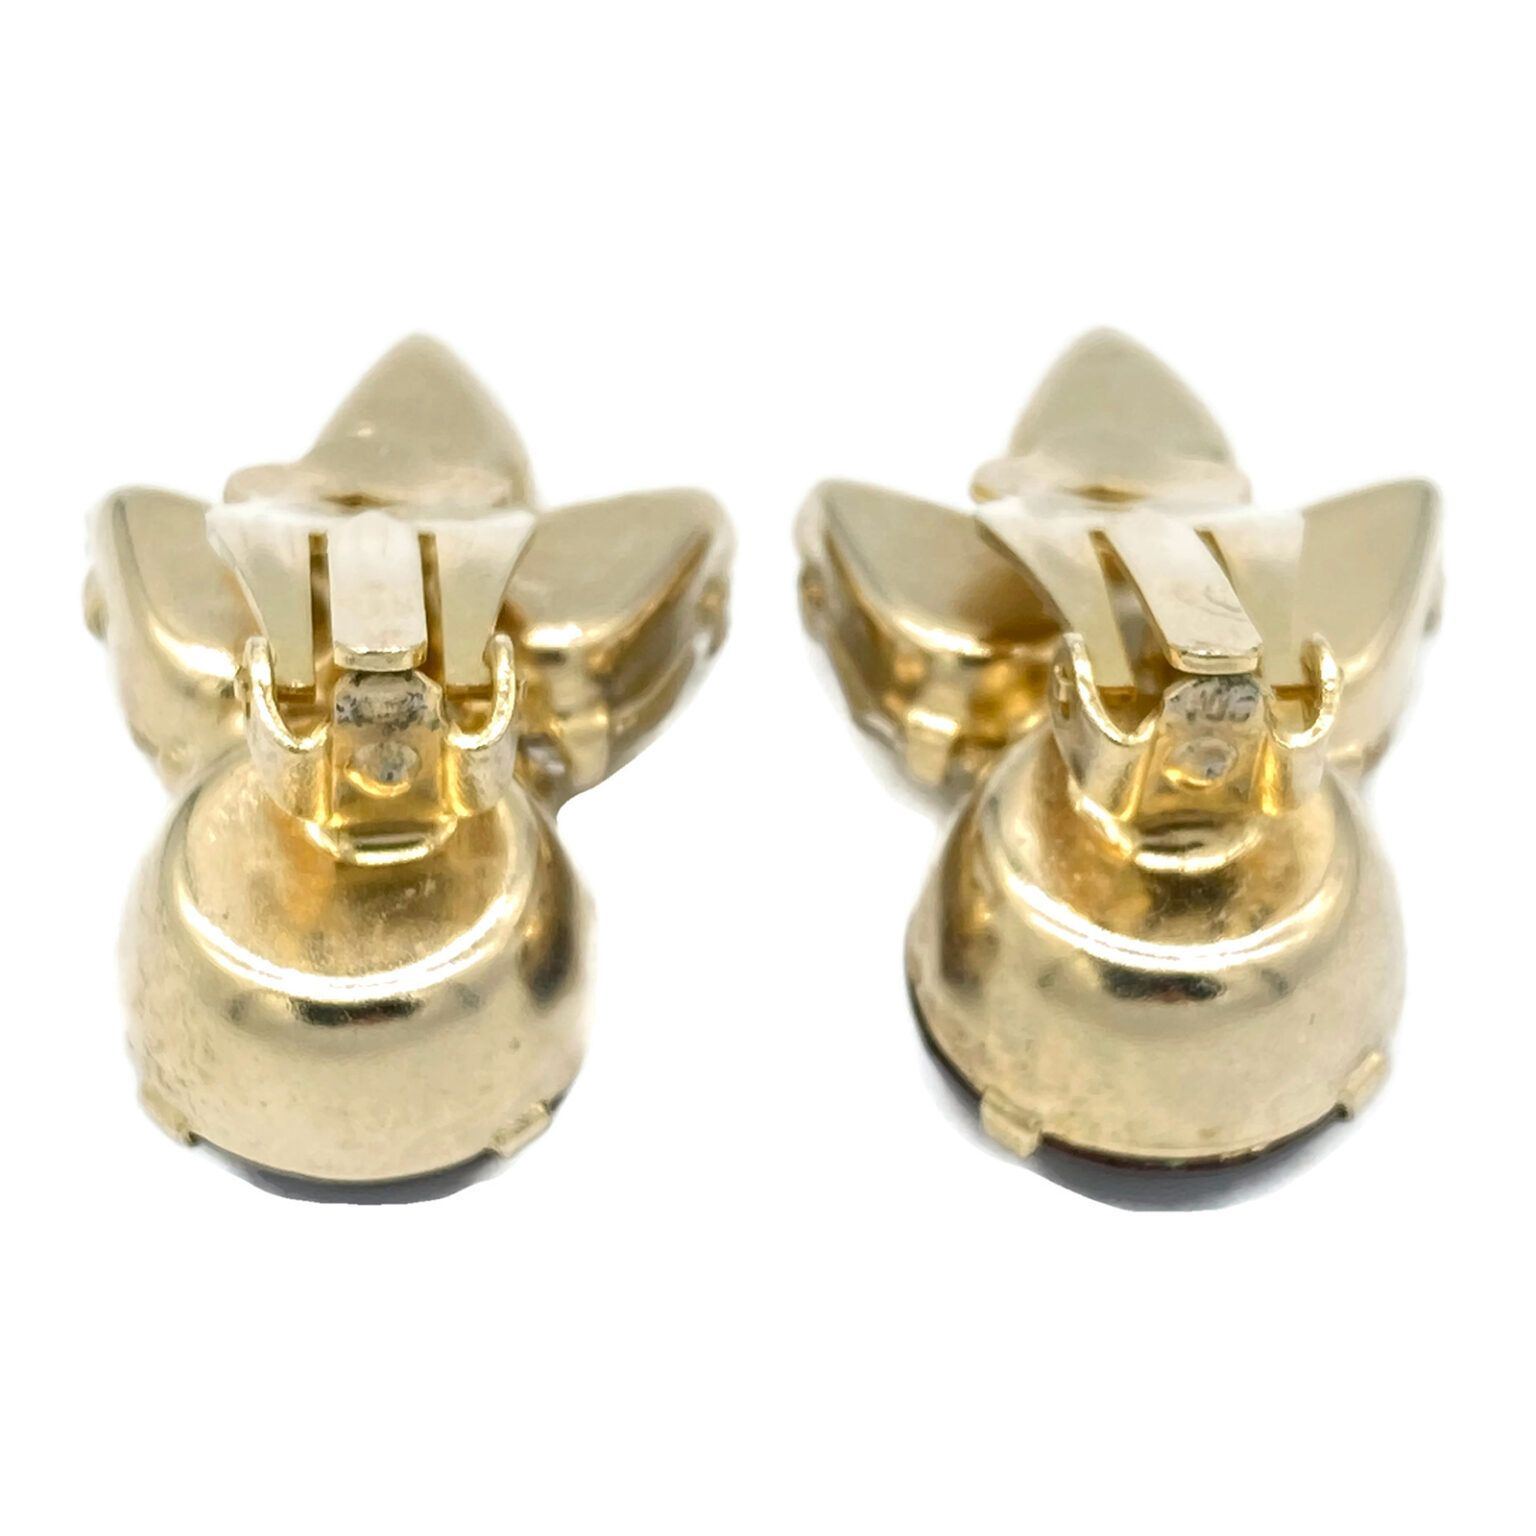 Givre Rhinestone Earrings in Fall Tones